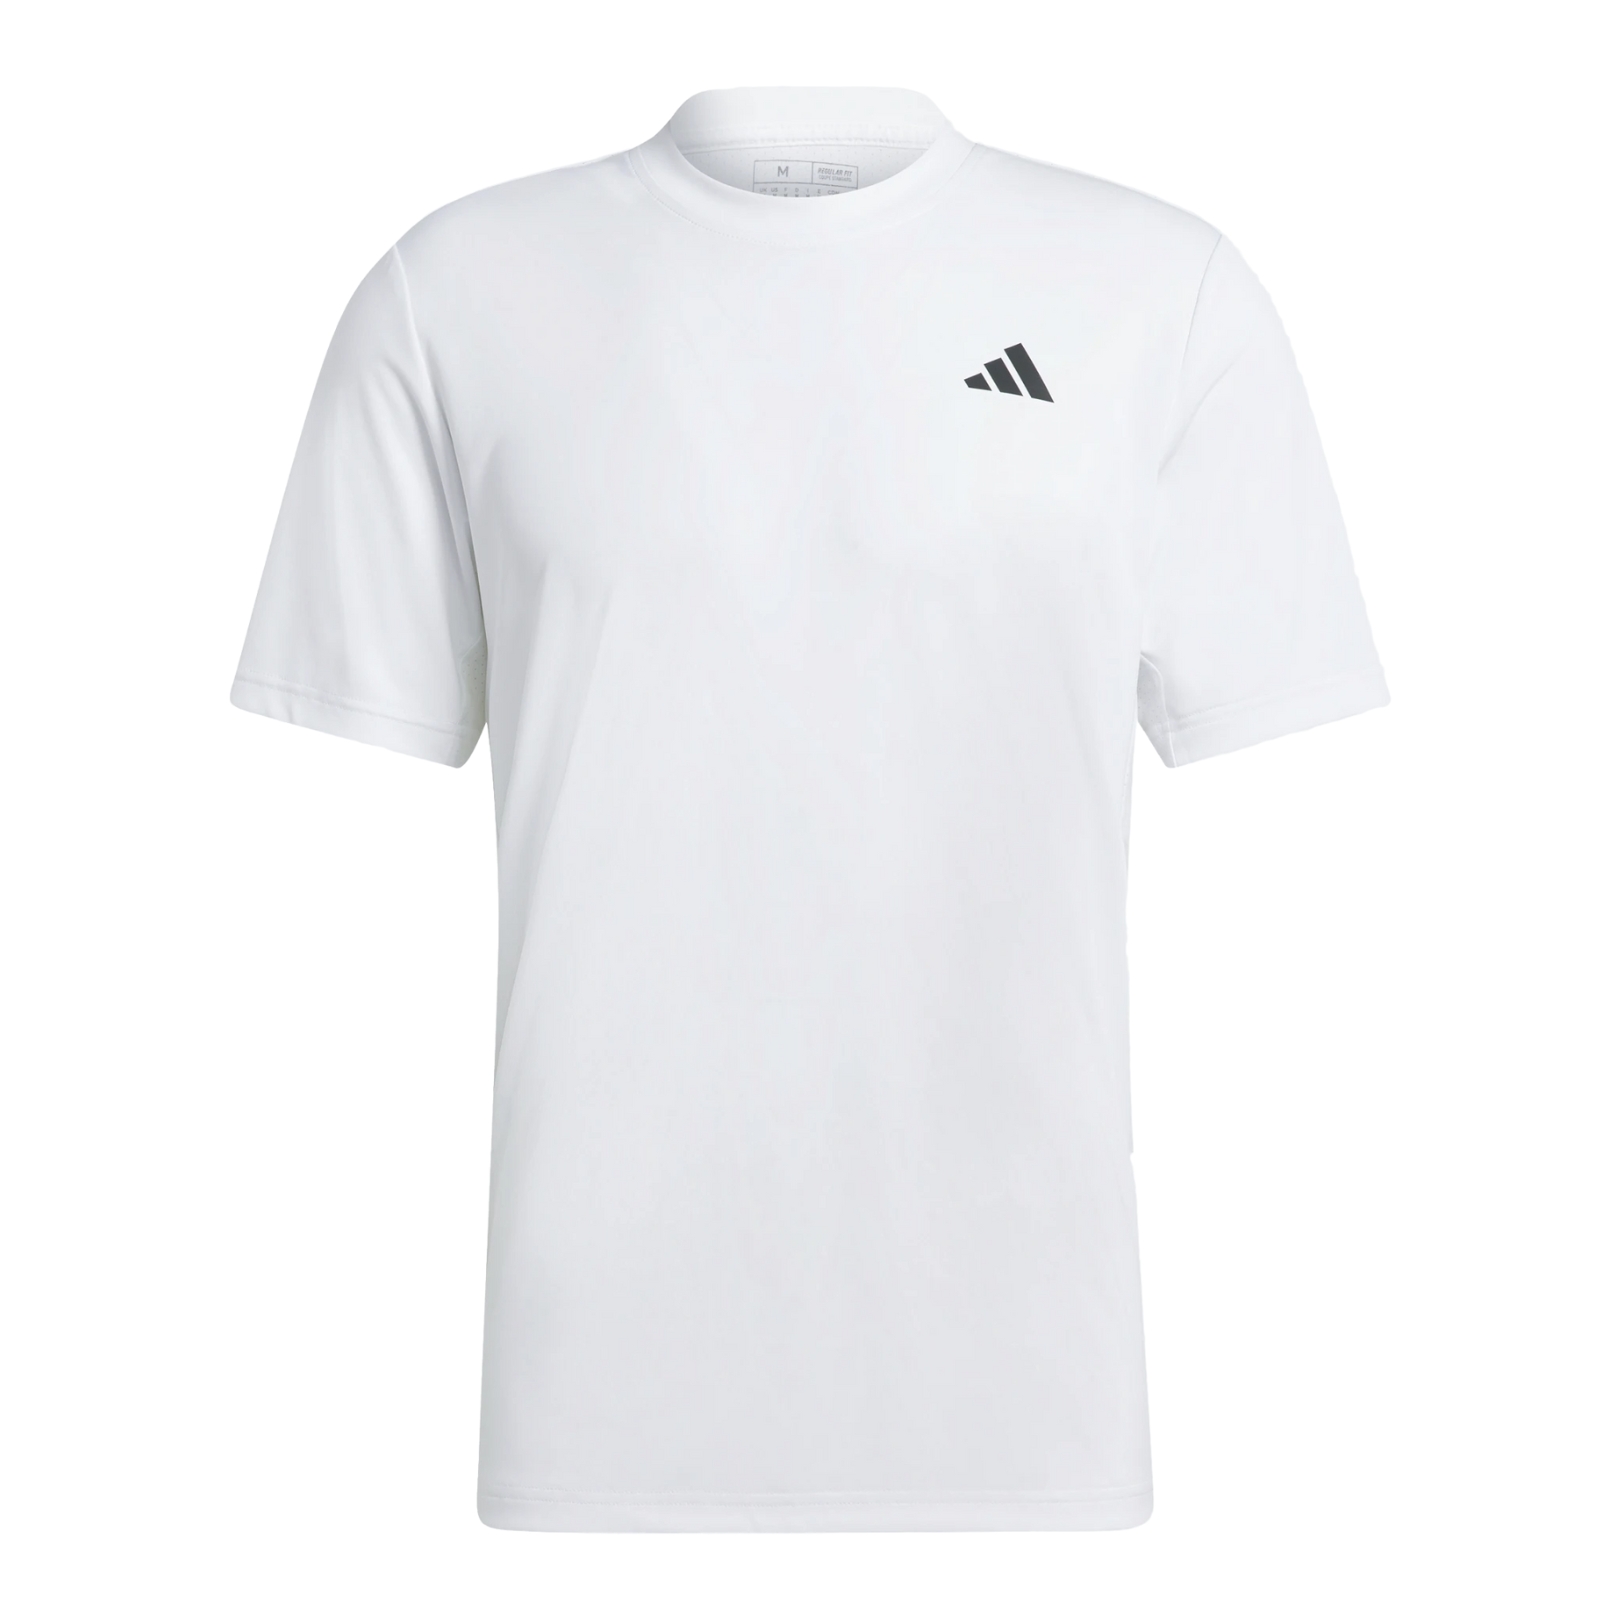 Adidas Club T-shirt Tennis t-shirt ⇒ Skarp pris